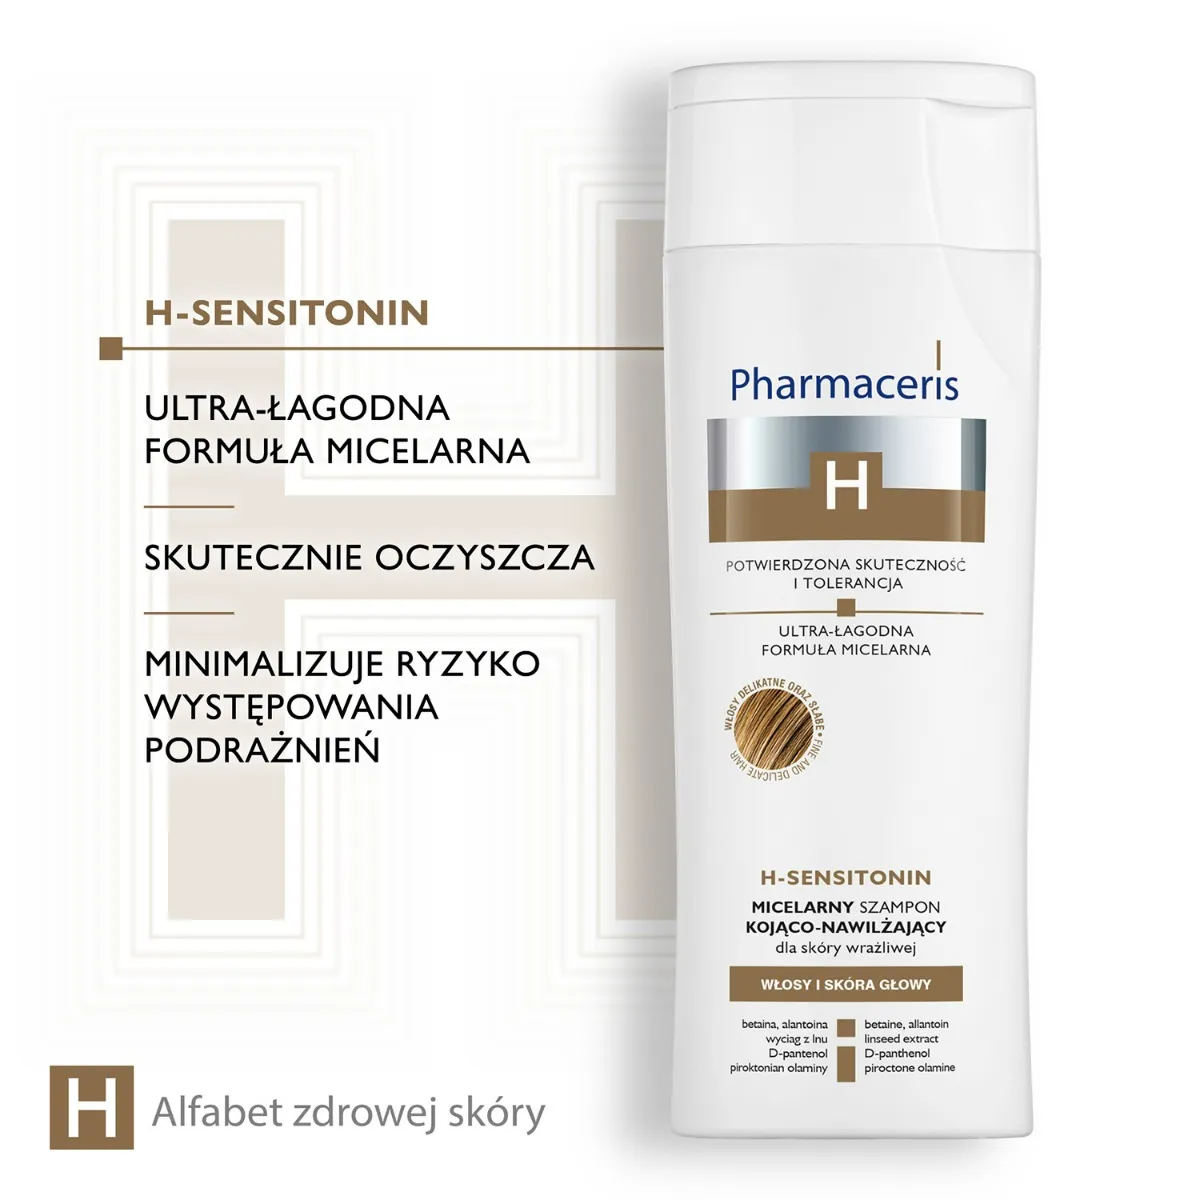 Pharmaceris H H-Sensitonin micelarny szampon kojąco-nawilżający dla skóry wrażliwej, 250 ml 